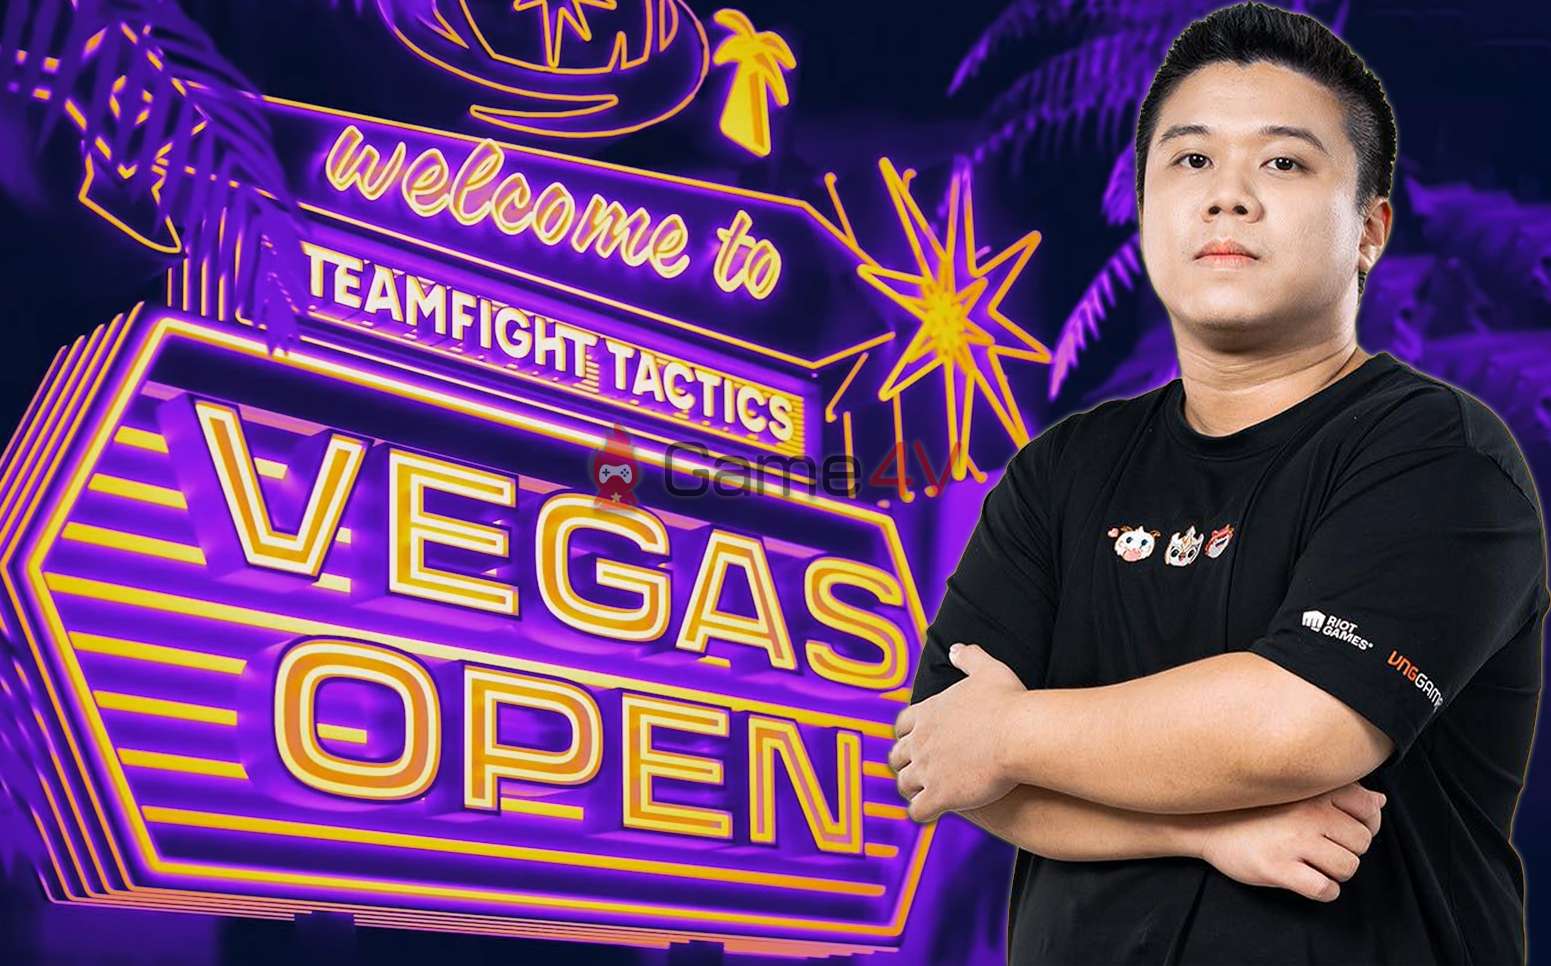 GD FEED là đại diện Việt Nam duy nhất bước sang ngày thi đấu thứ 2 của TFT Vegas Open.